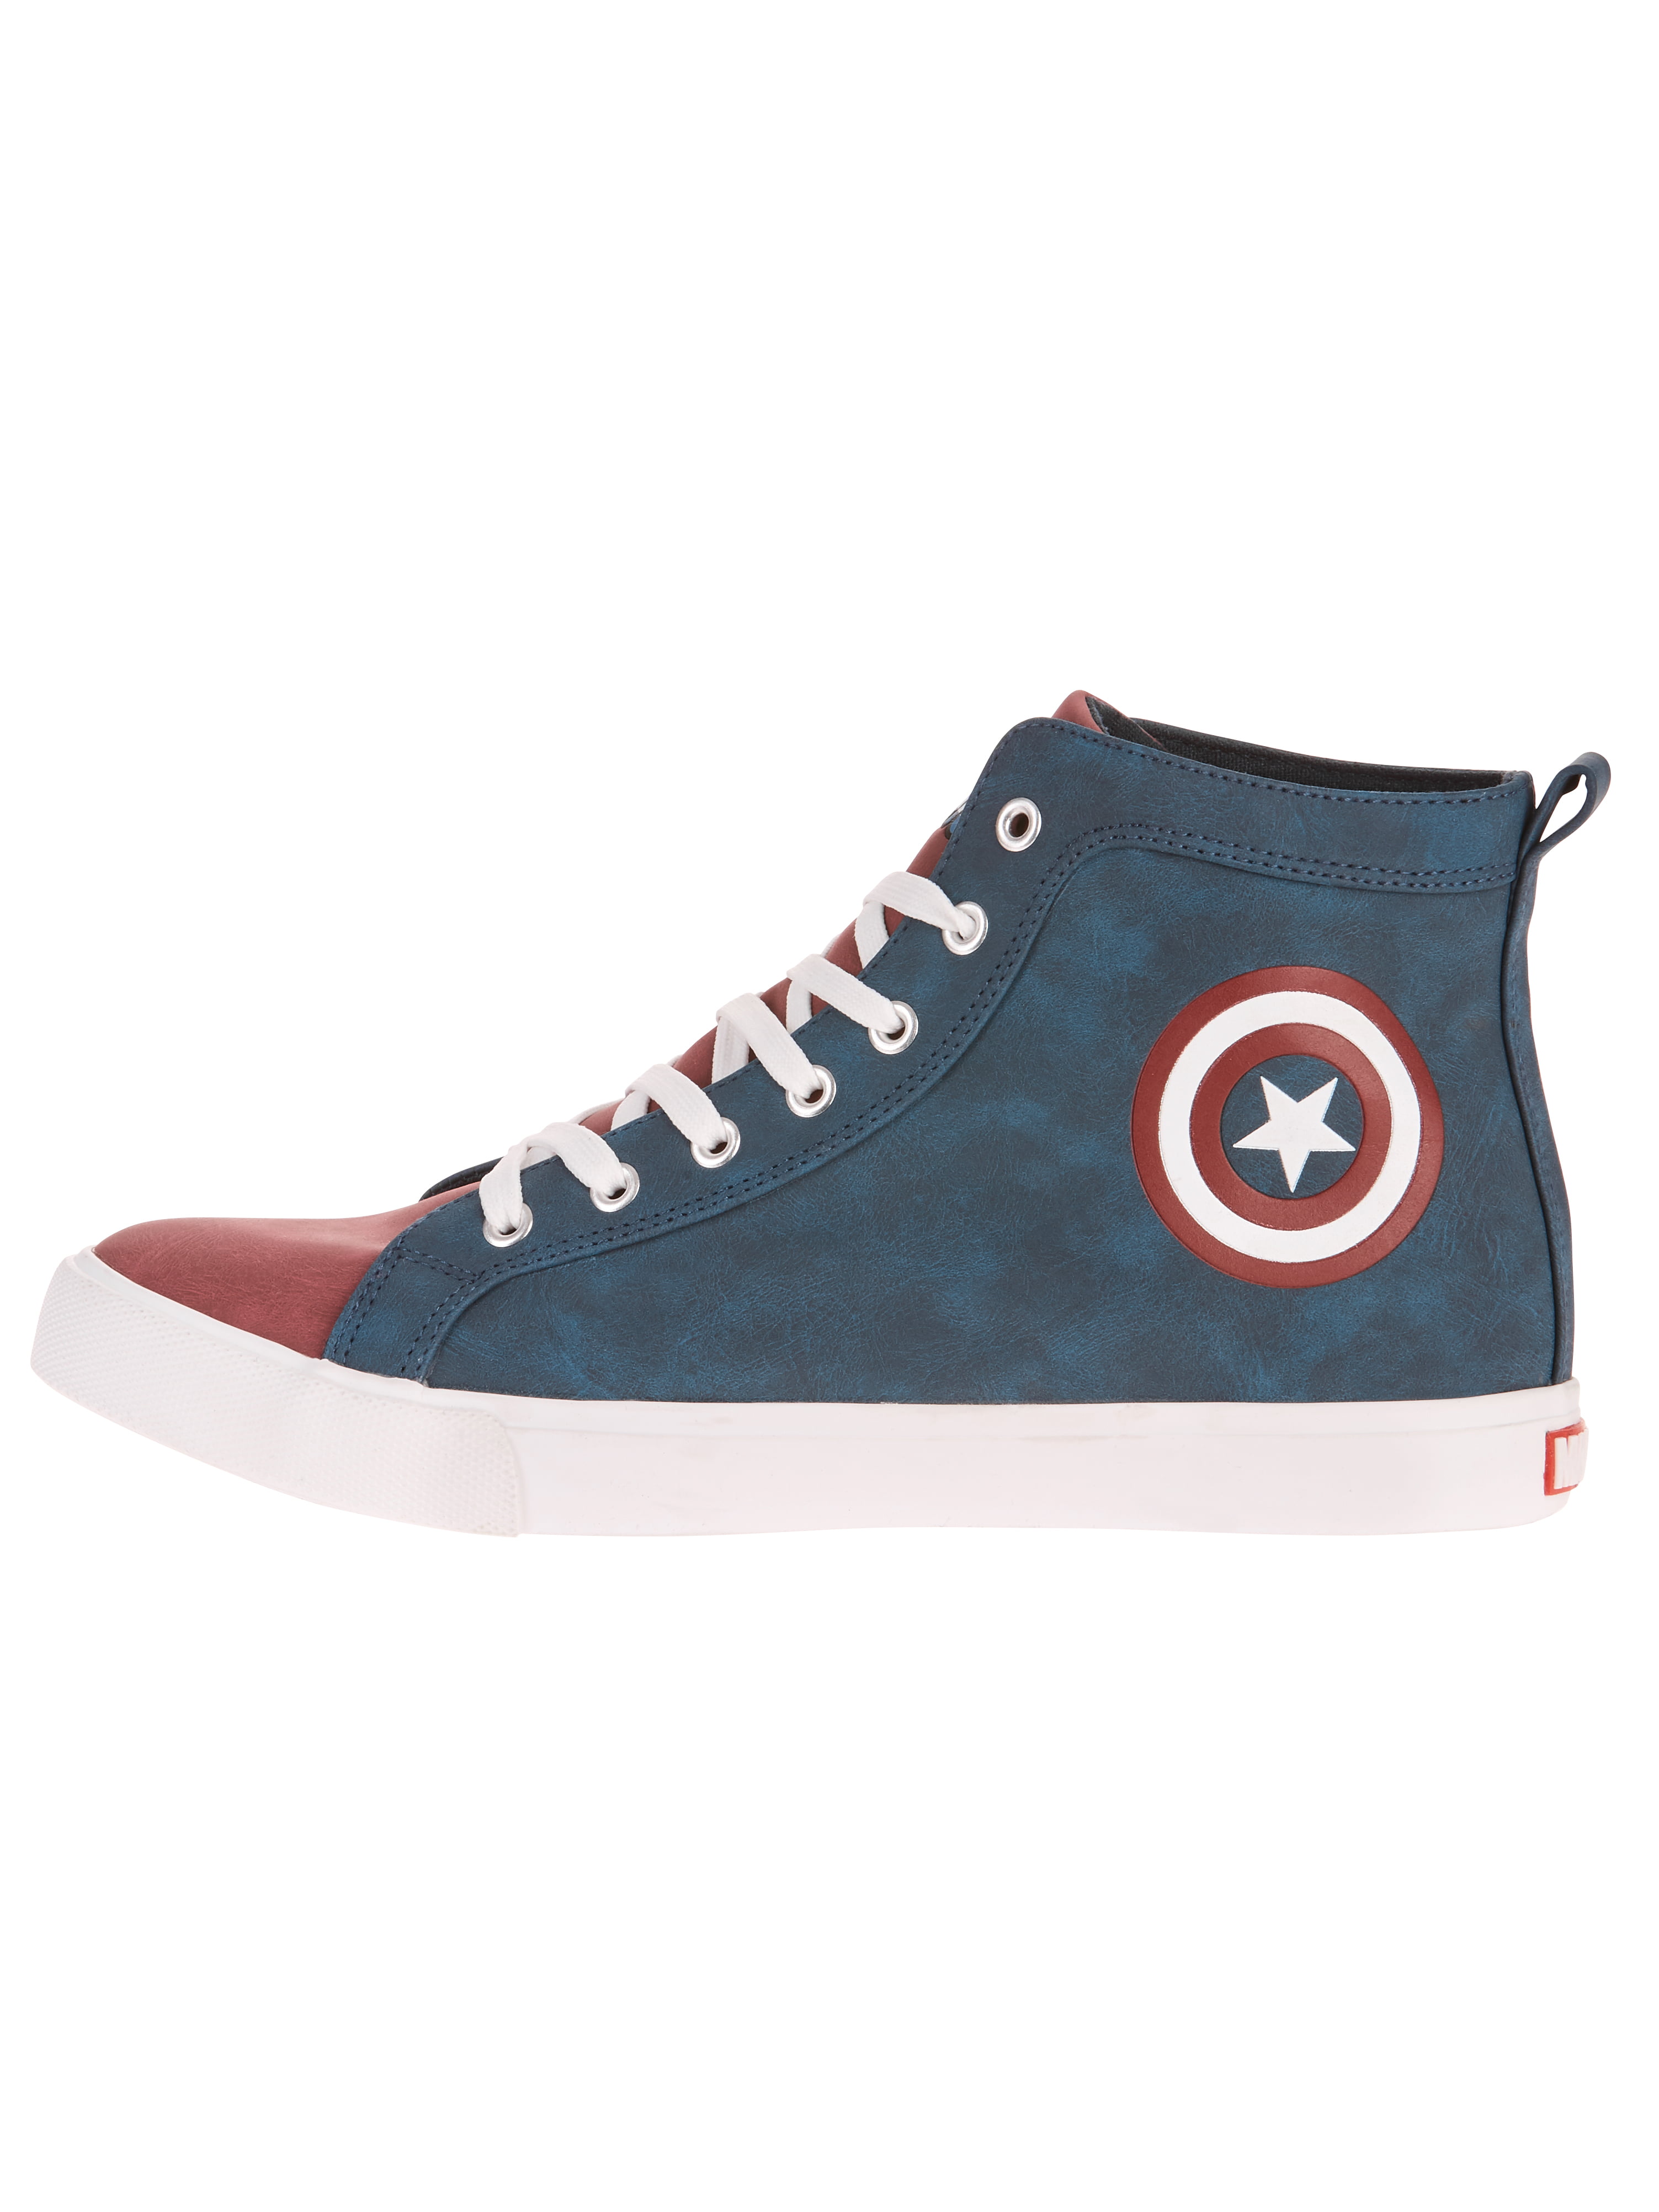 Marvel's Avengers: Captain America Men's High Top Sneaker 